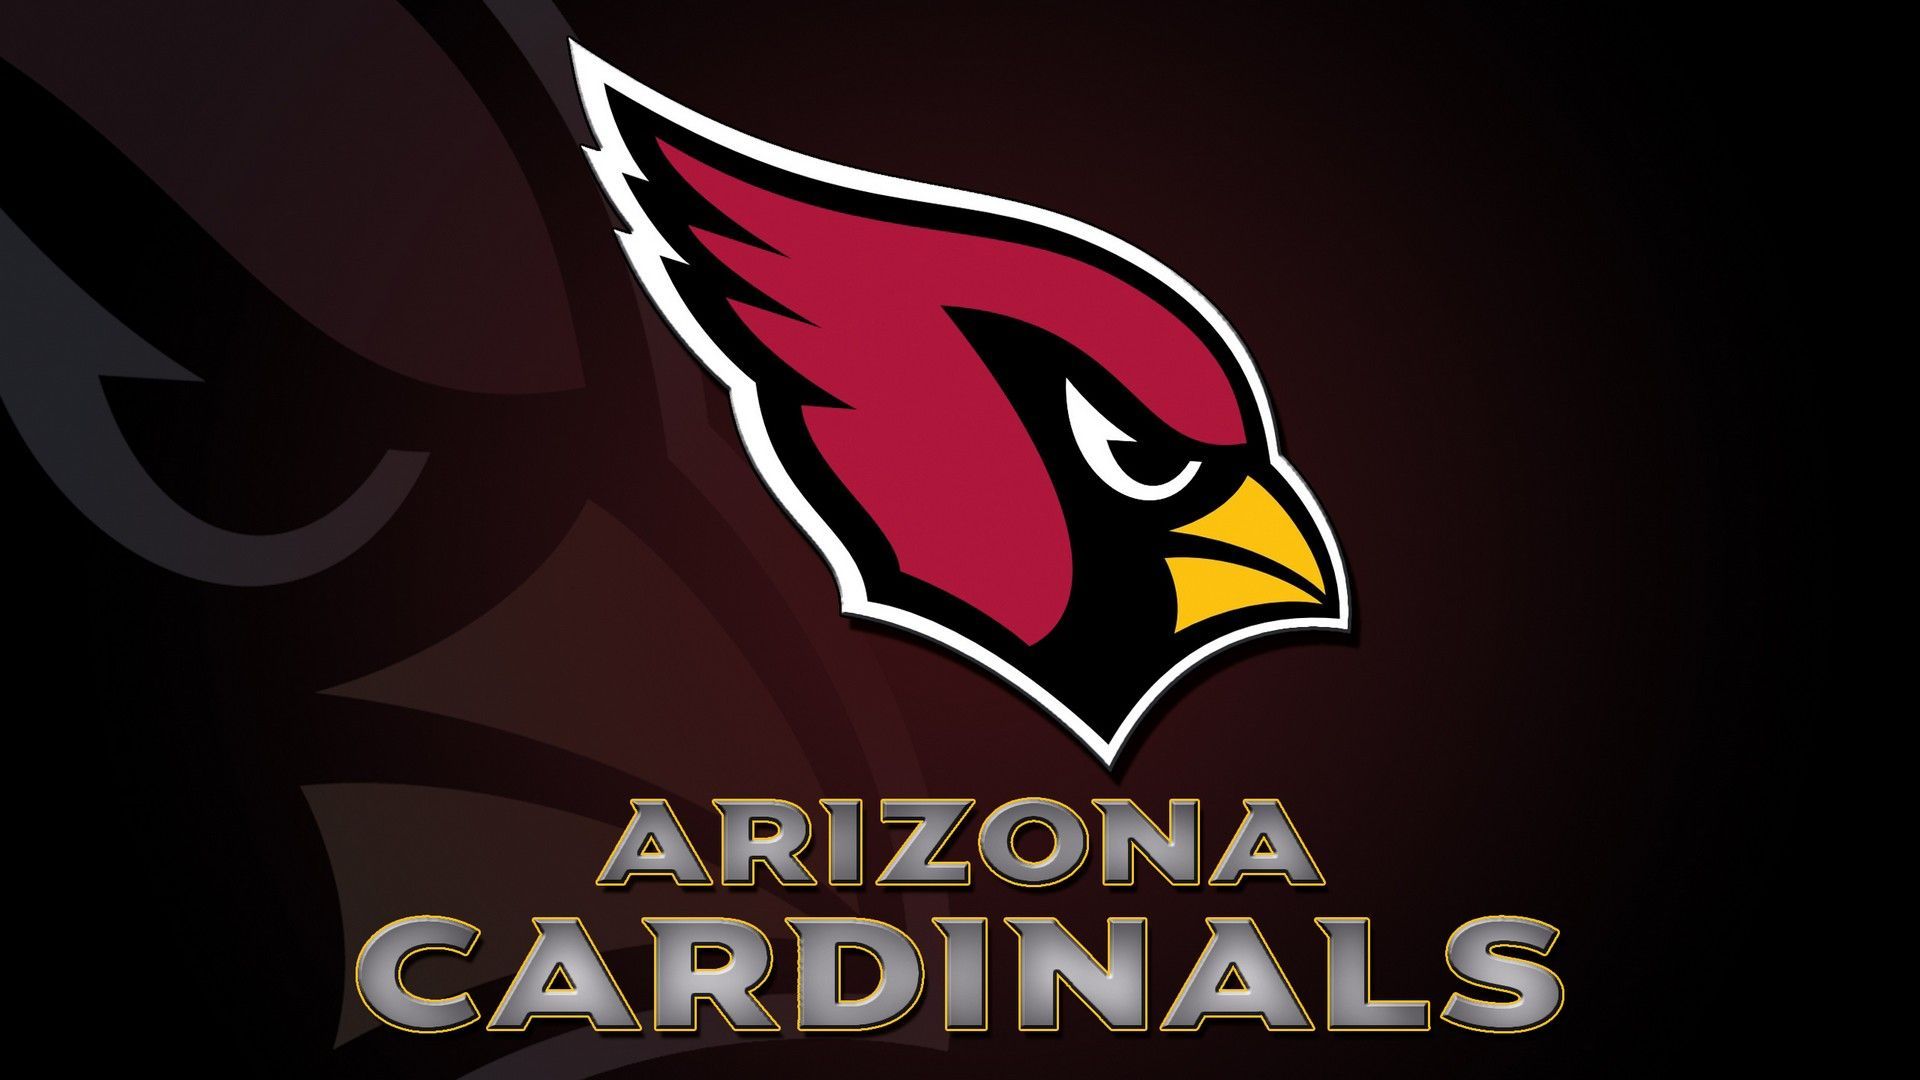 Arizona Cardinals Wallpapers 4k, HD Arizona Cardinals Backgrounds on